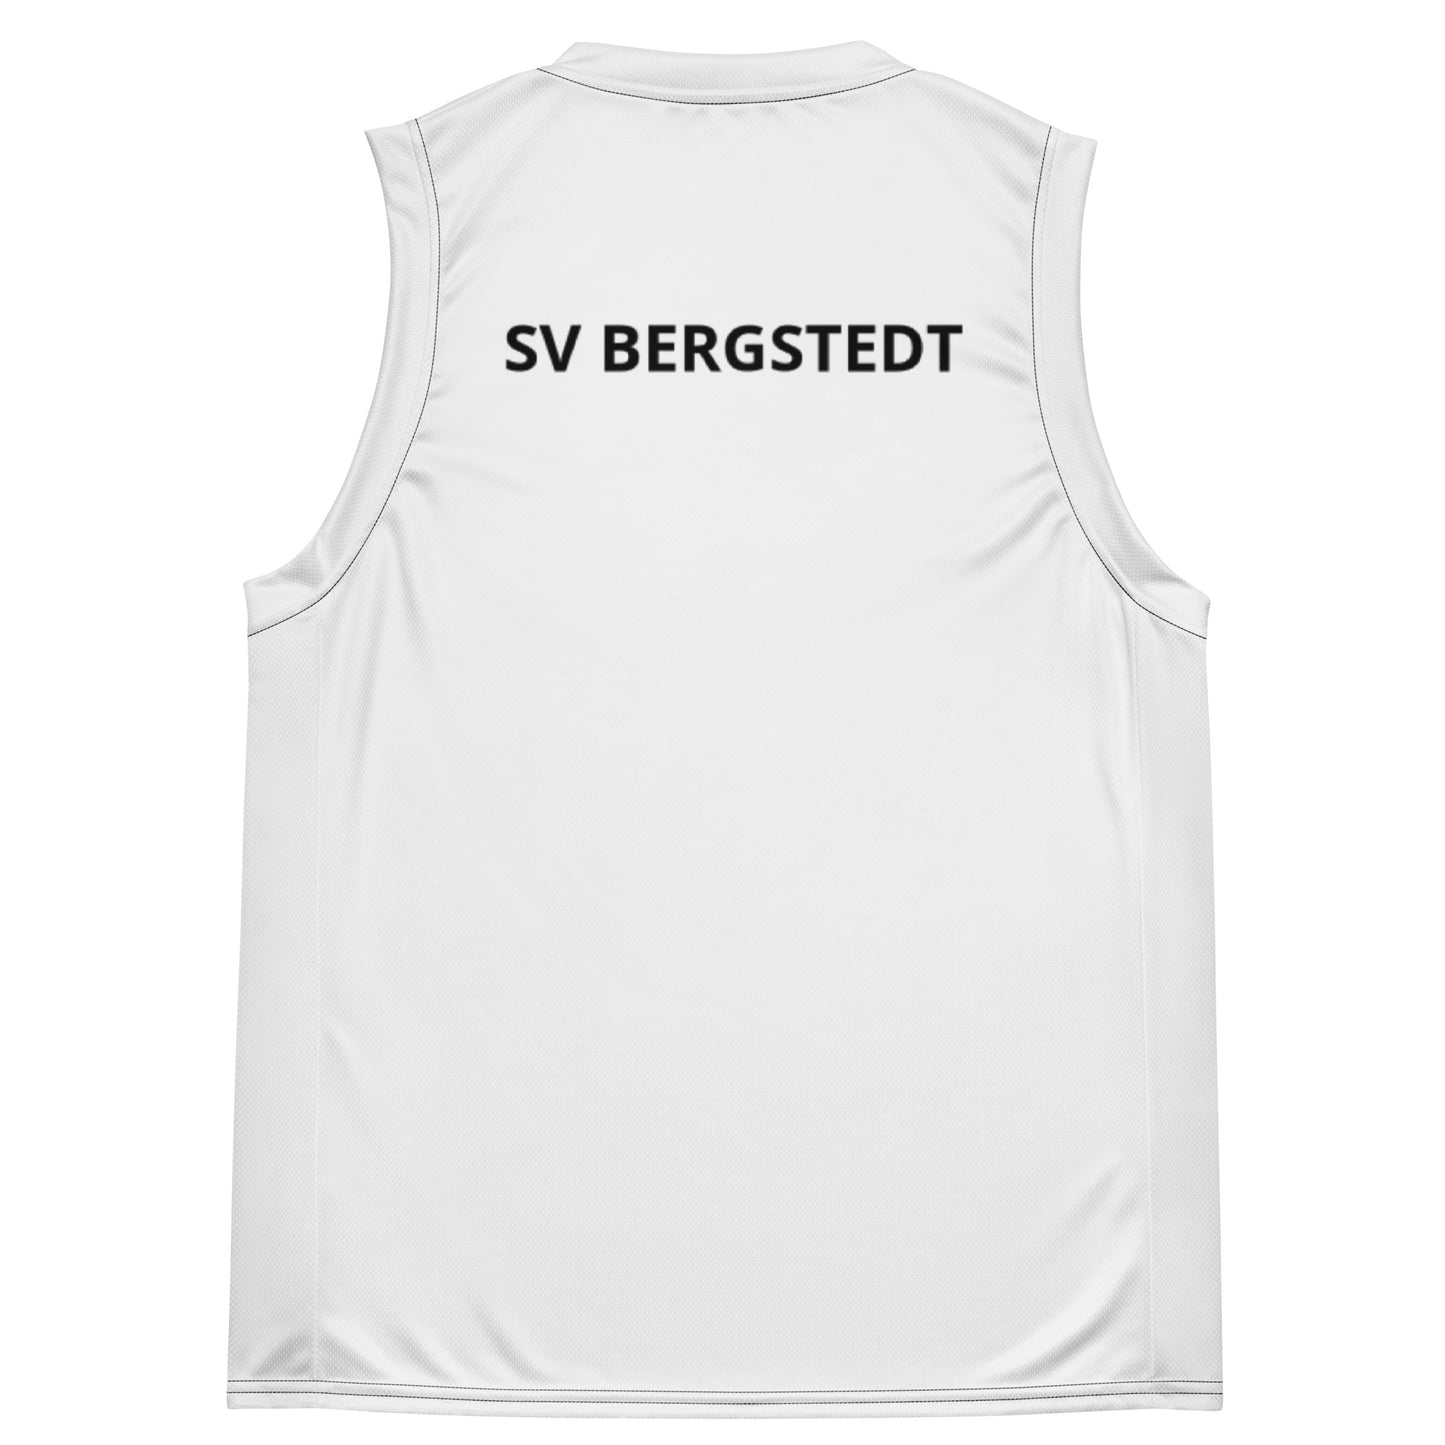 SVB Shirt│Recyceltes Unisex-Basketballtrikot: No Player Name │All-Over-Druck